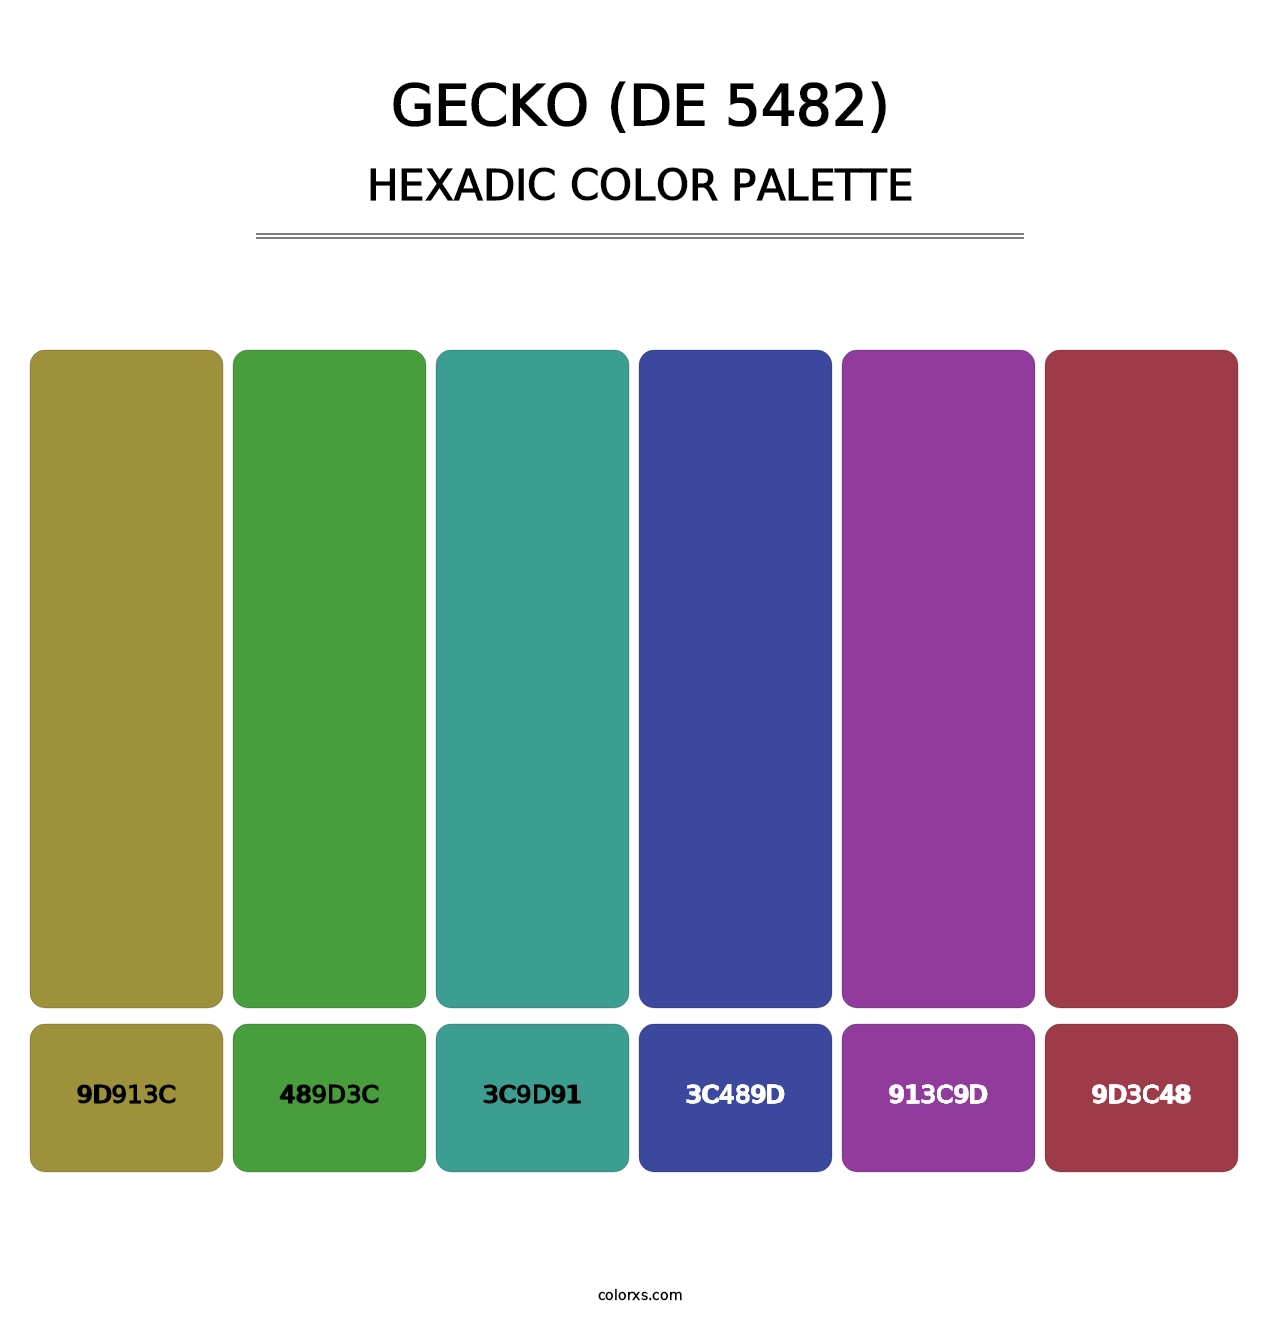 Gecko (DE 5482) - Hexadic Color Palette